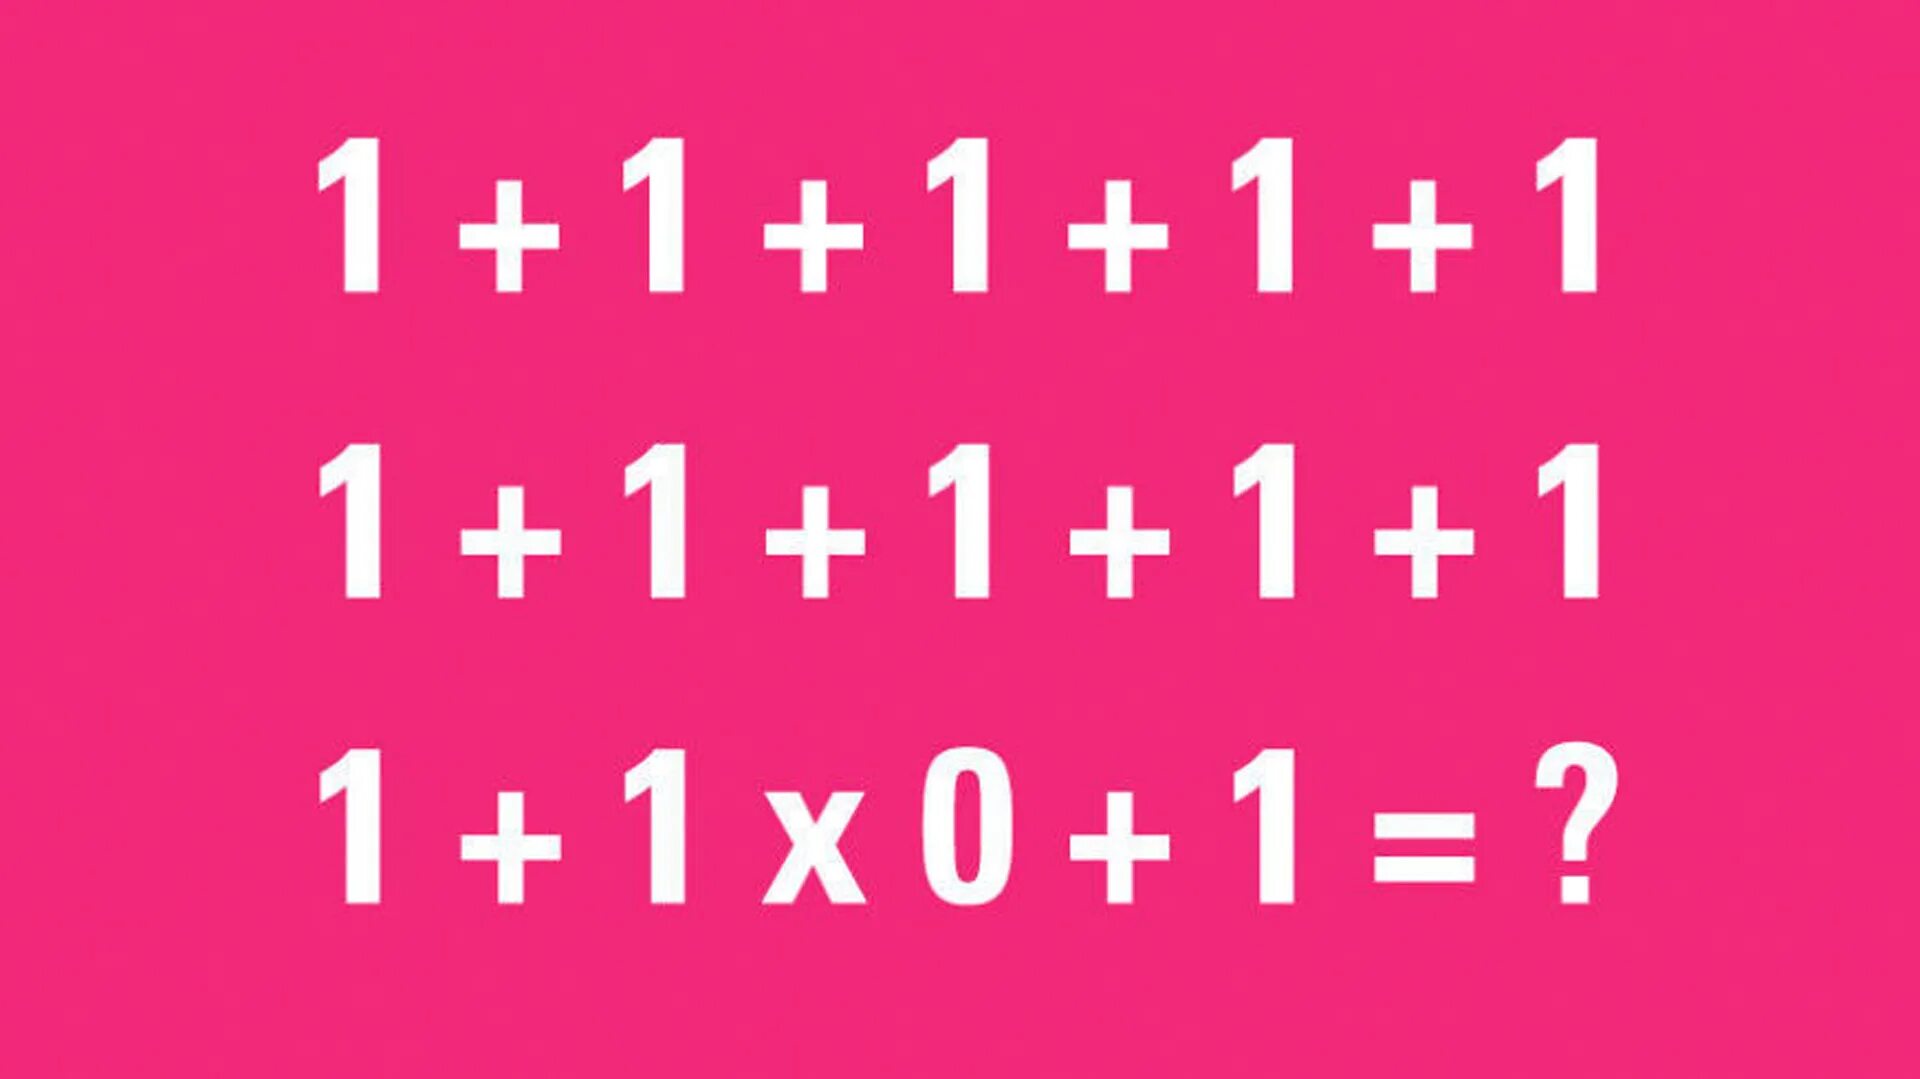 Загадка 1+1+1+1+1. 90 Людей не могут решить эту задачу. Головоломка 1+1+1+1+1+1+1+1+1+1+1+1 0+1 ответ. Загадки на логику с ответами 1+1+1+1+1 1+1 *0. 1.1 1.1 user